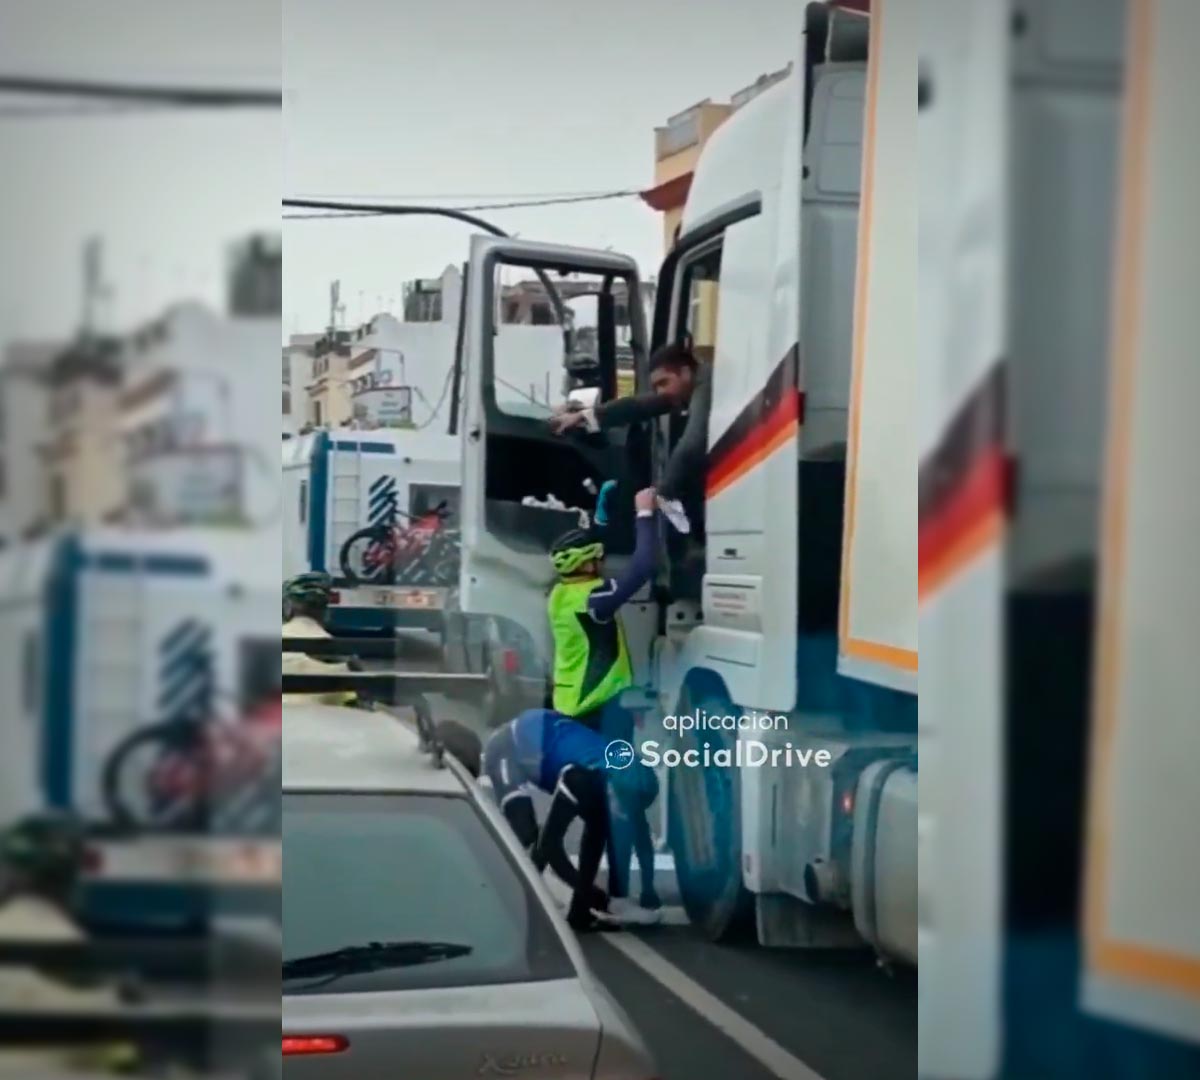 Un vídeo con unos ciclistas agrediendo a un camionero incendia las redes: "Atropellar ciclistas debería desgravar"